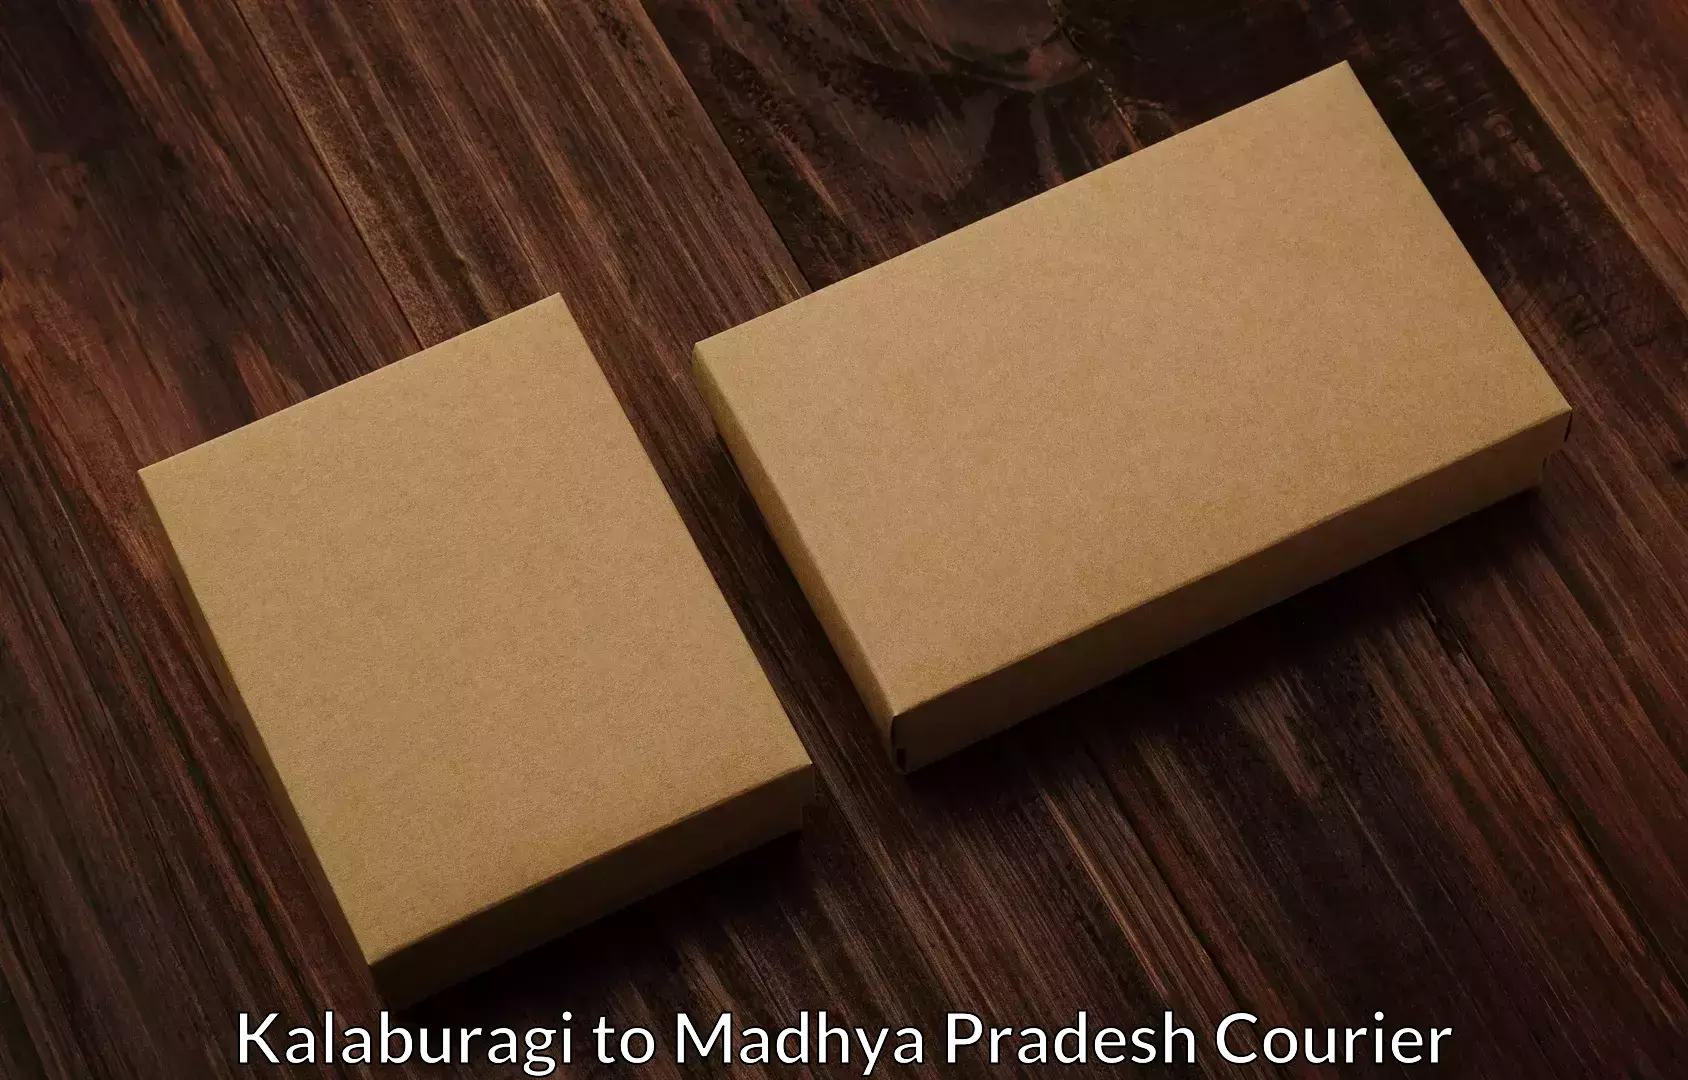 Packing and moving services Kalaburagi to Niwari